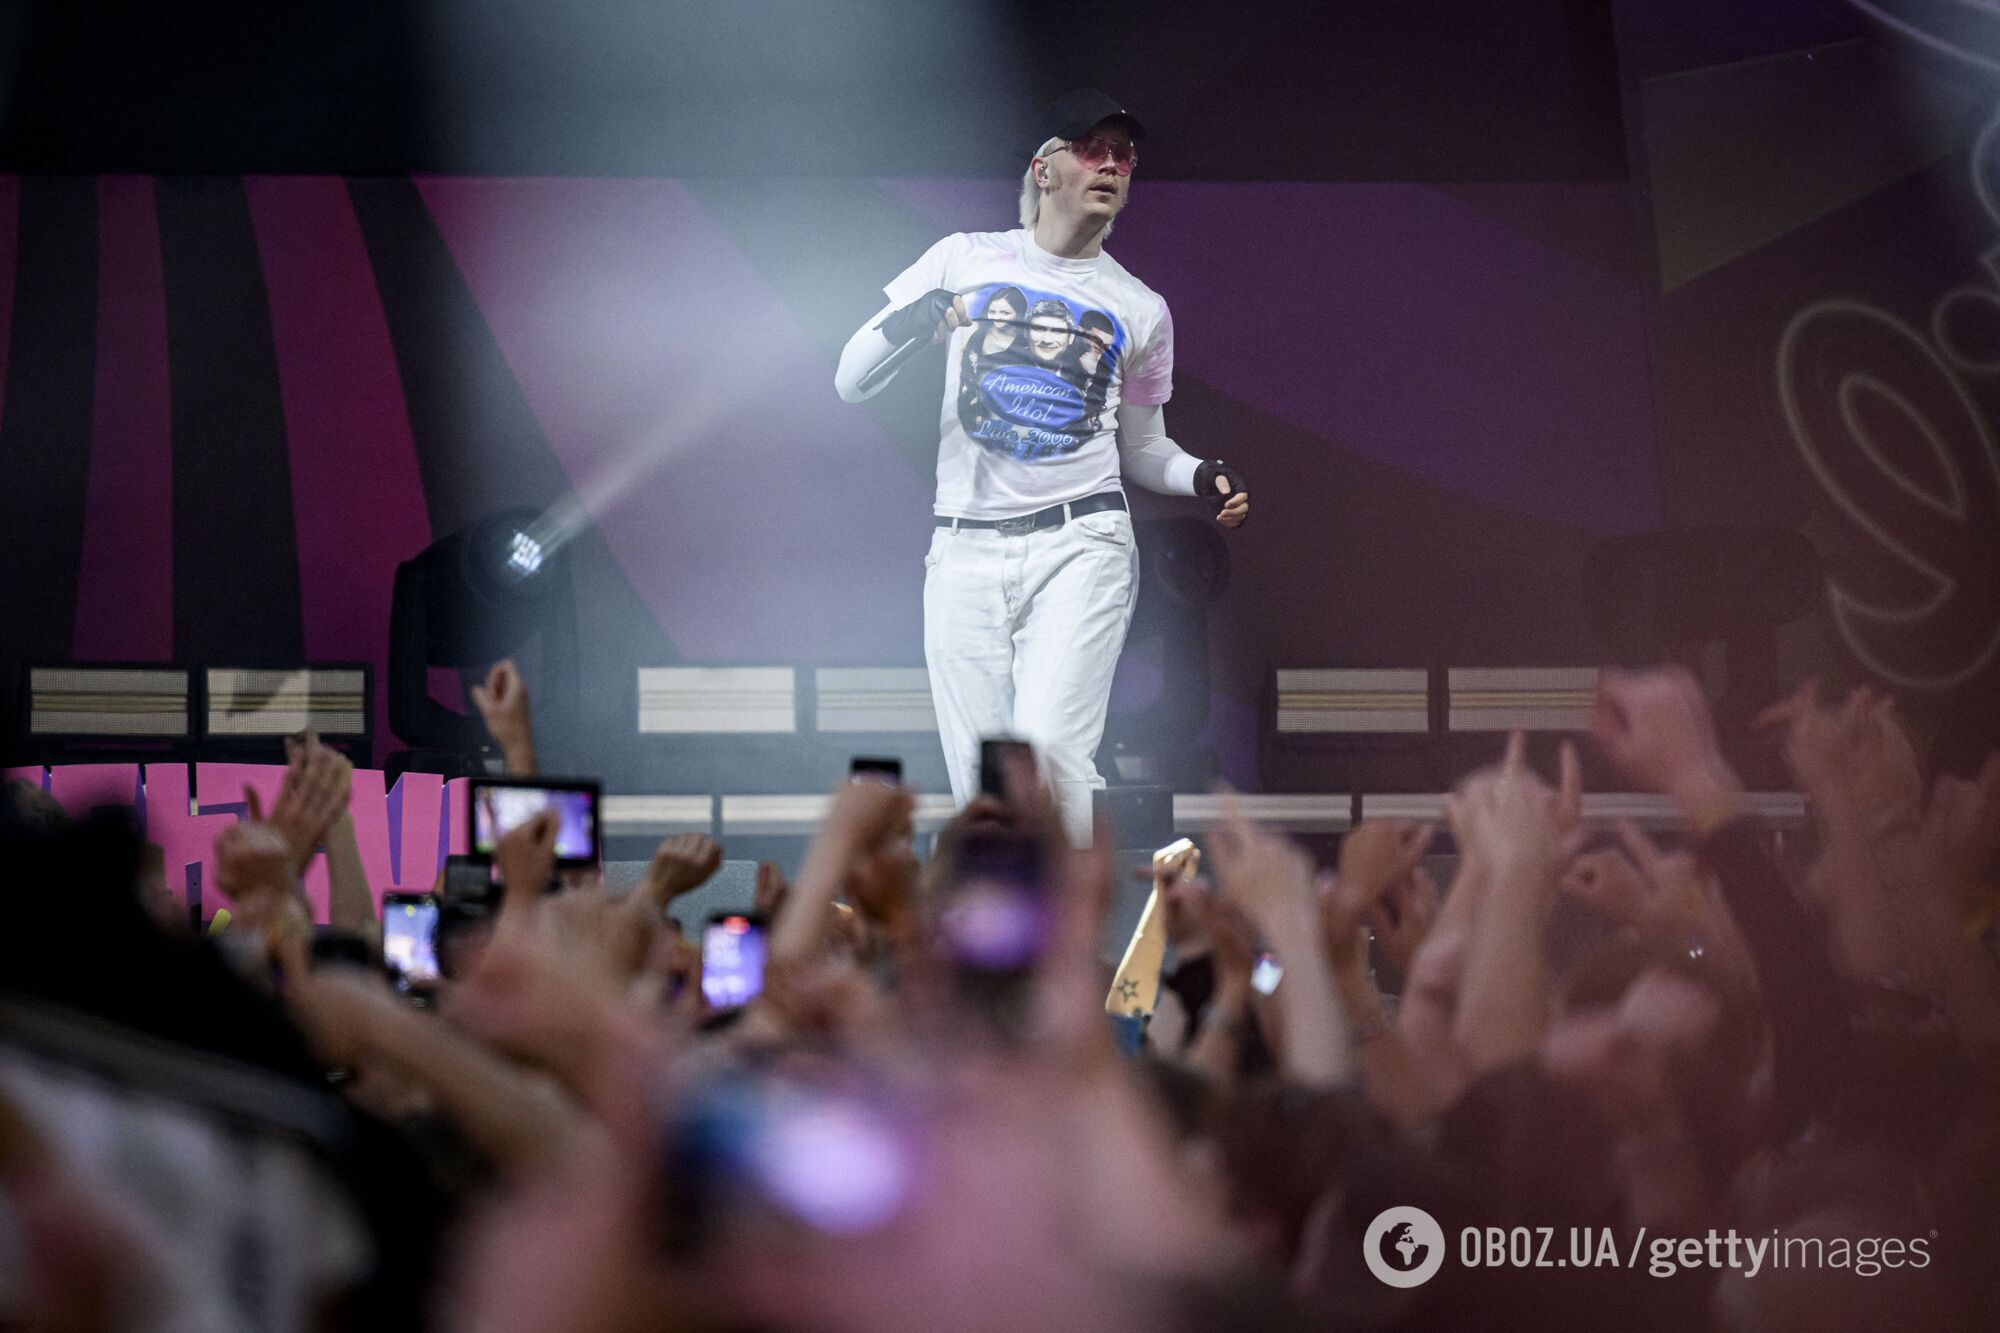 Йост Кляйн впервые появился на публике после дисквалификации с Евровидения и со сцены прокомментировал скандал. Фото и видео